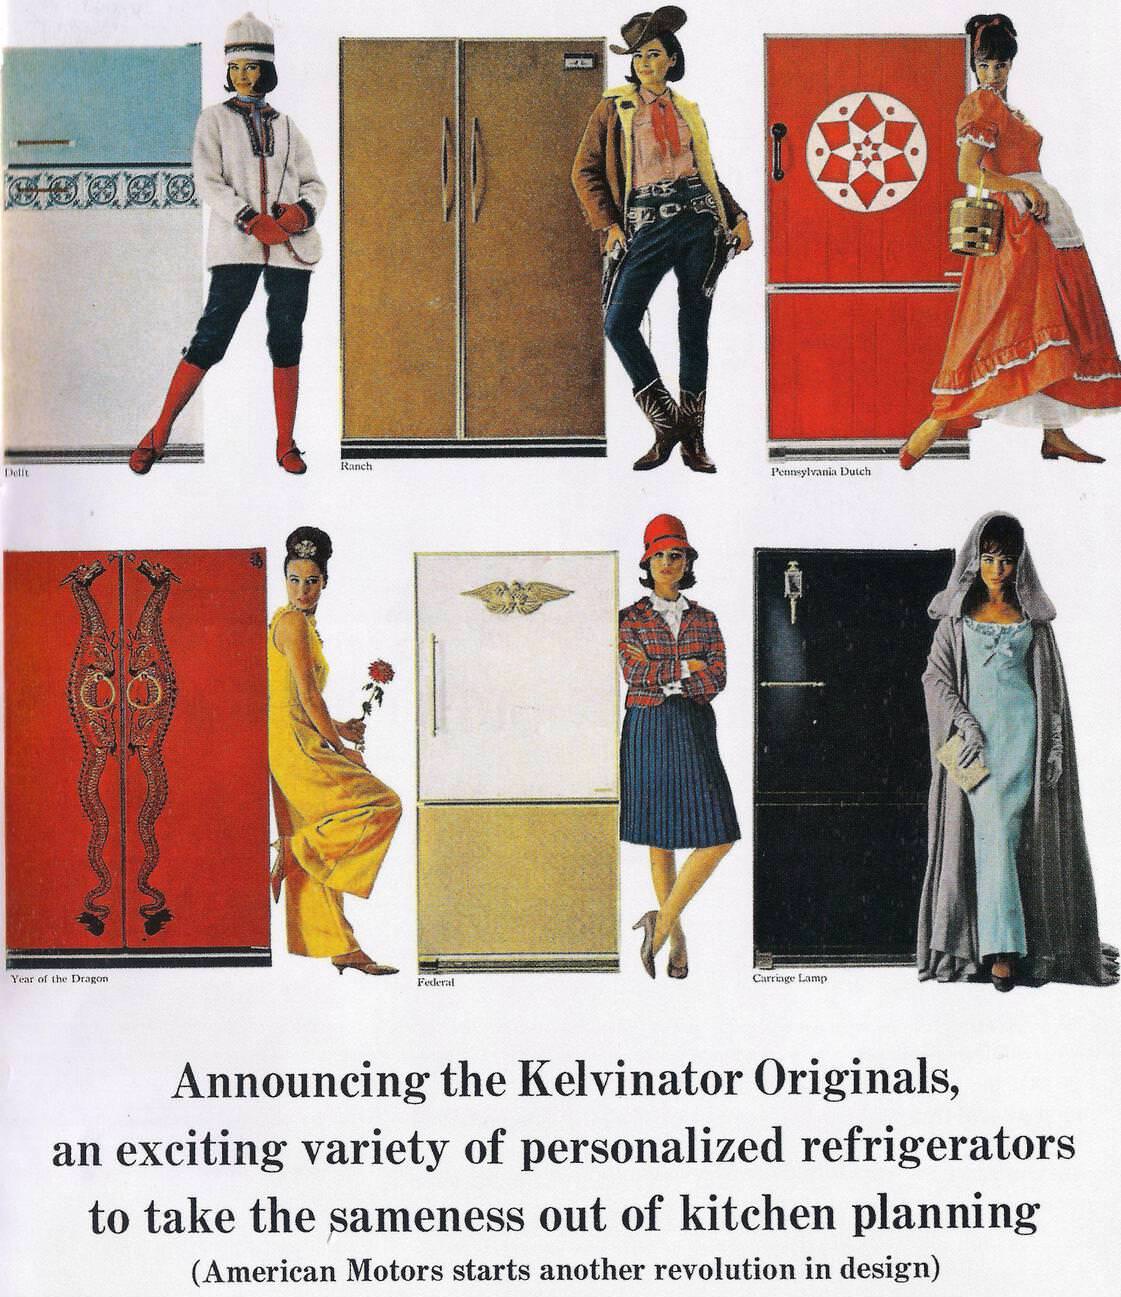 Kelvinator Fridge ad, 1965.